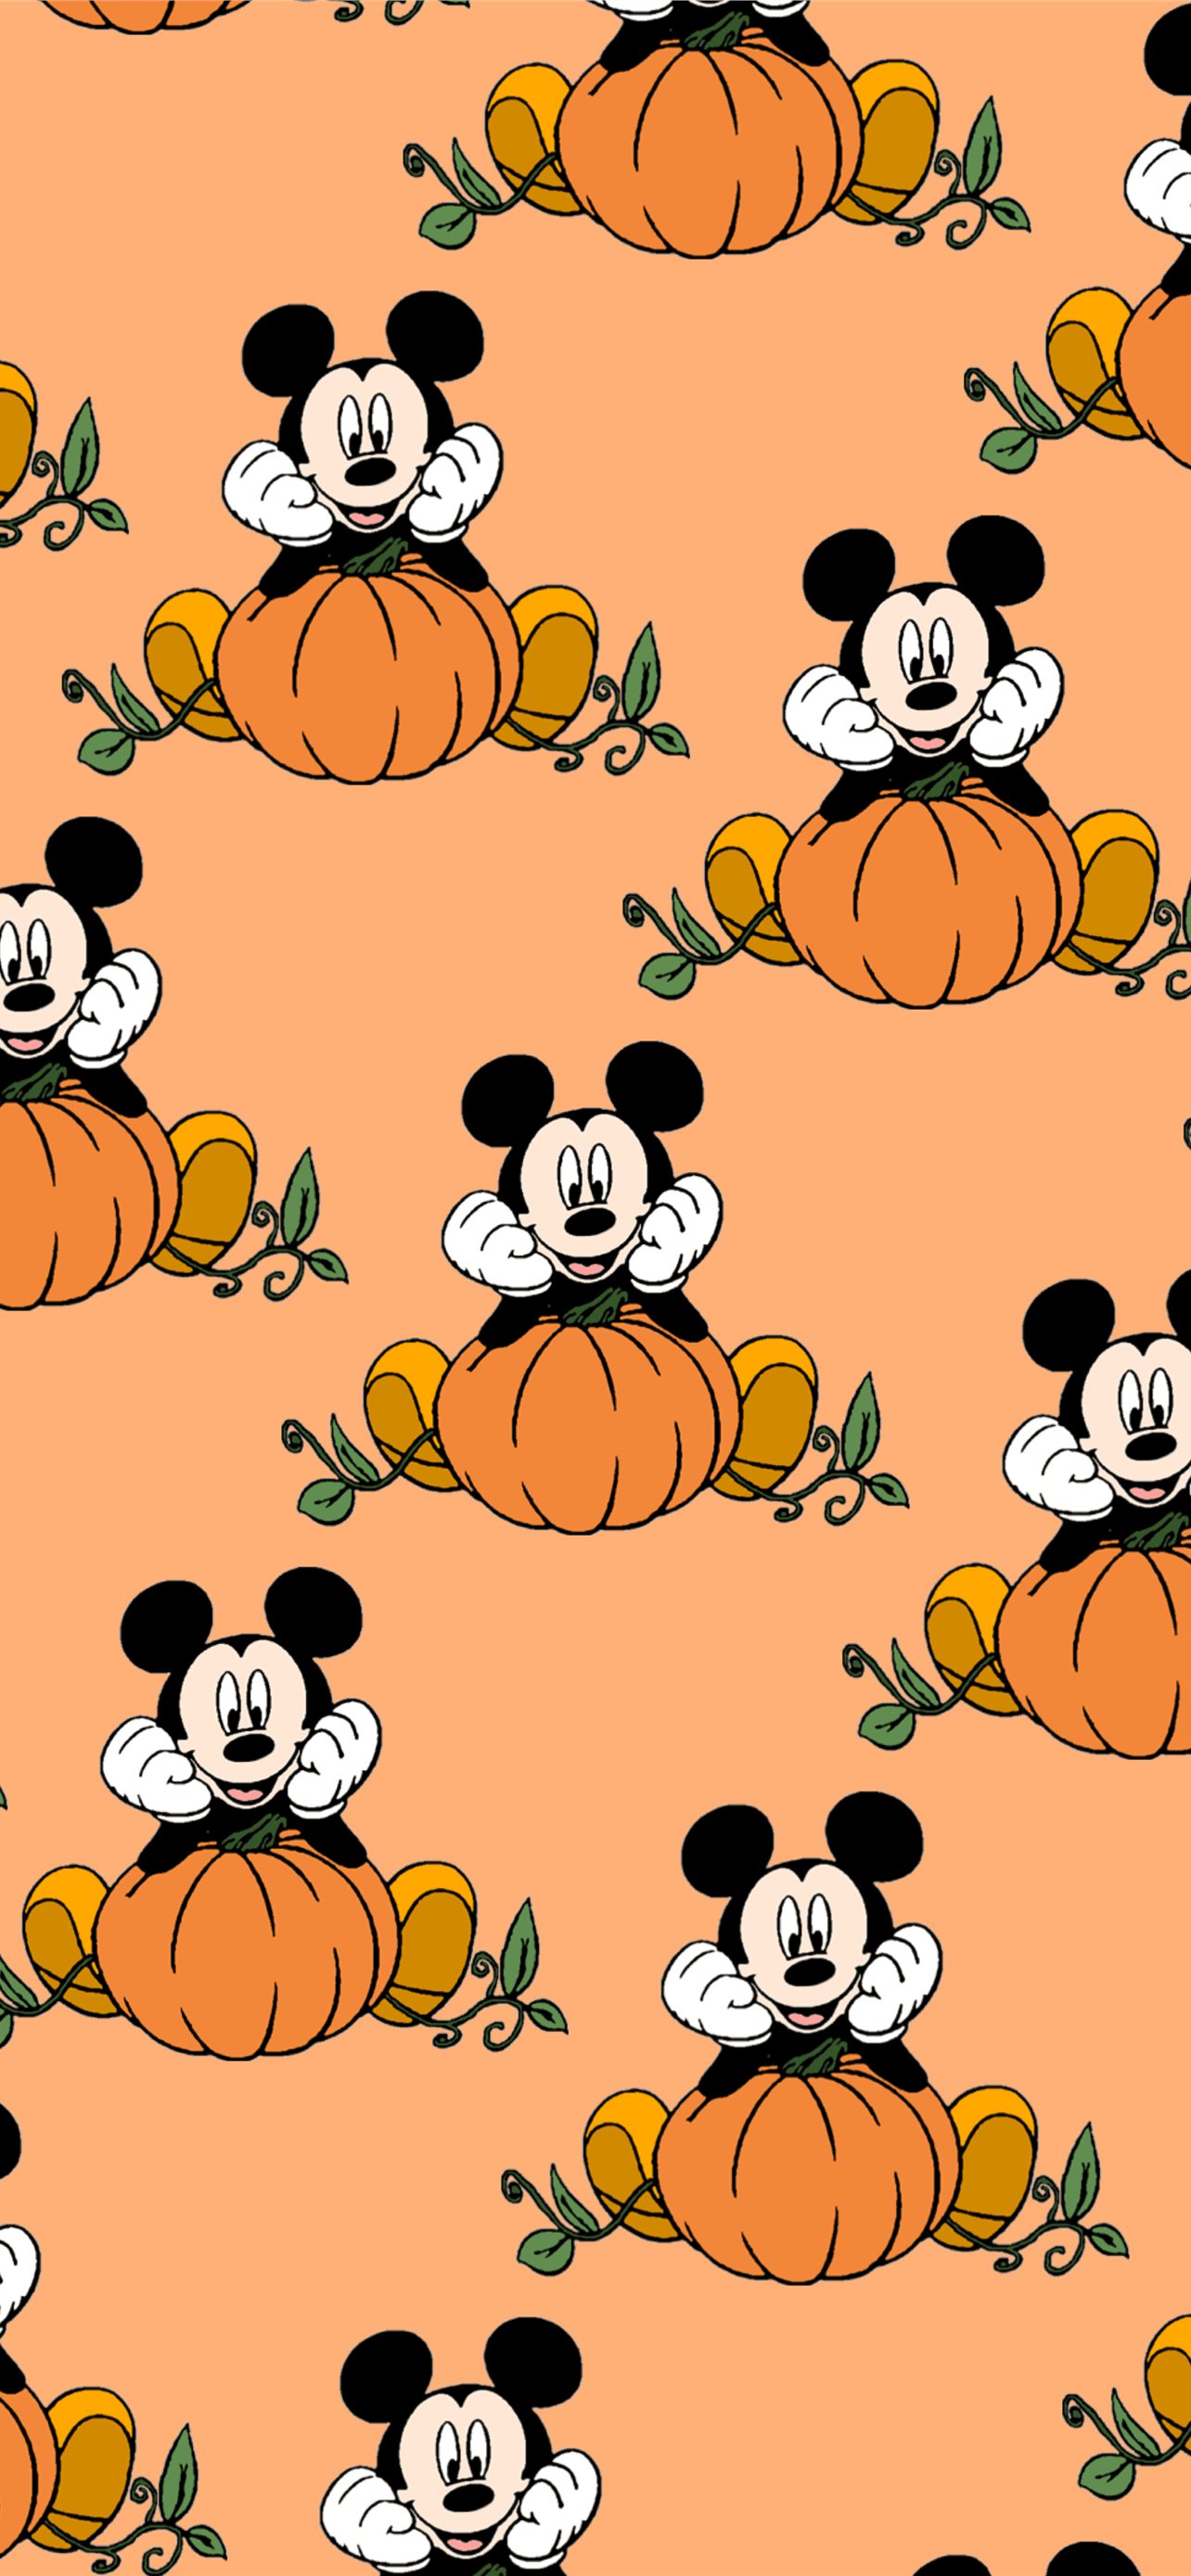 Best Halloween iPhone HD Wallpaper